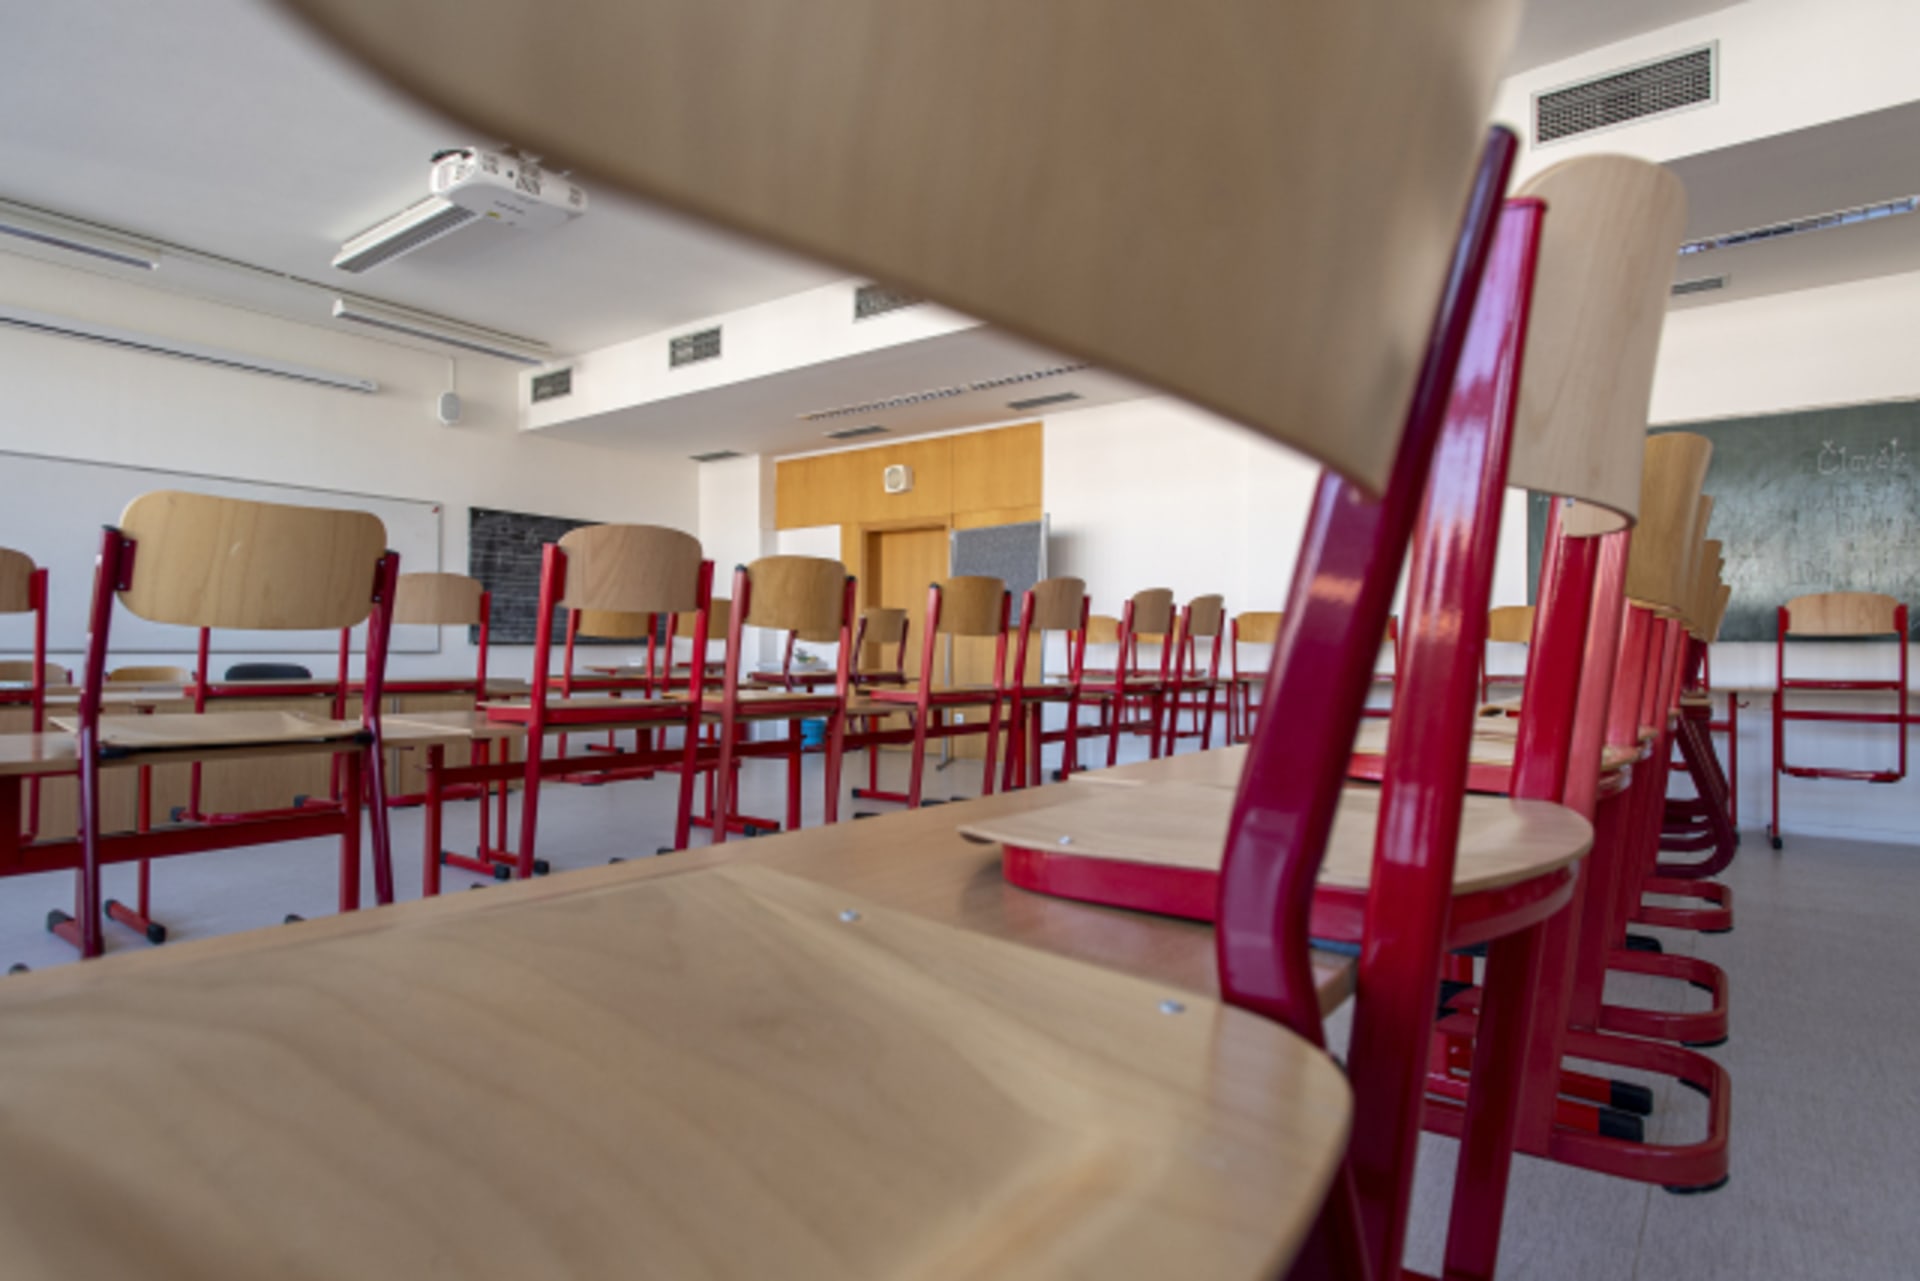 Policie prověřuje případ údajného sexuálního zneužívání nezletilých studentek na biskupském gymnáziu v Krupce na Teplicku. (Ilustrační foto)